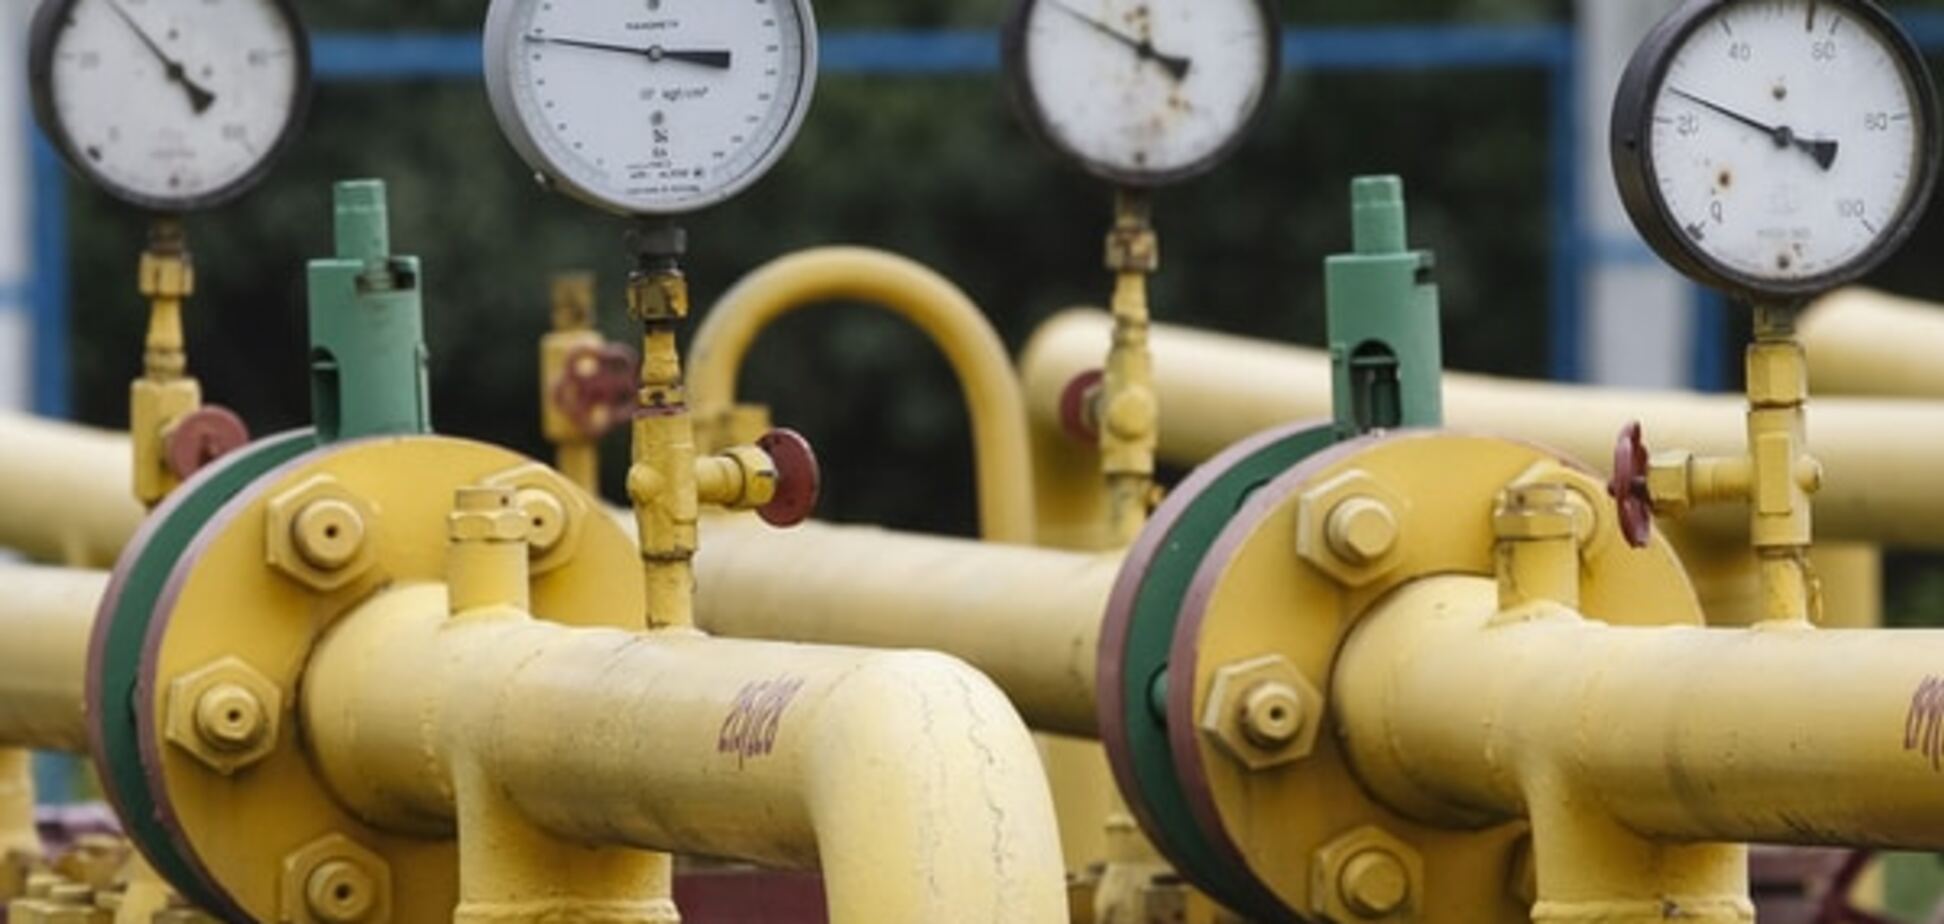 ЗМІ повідомили про домовленості щодо постачання газу в Україну